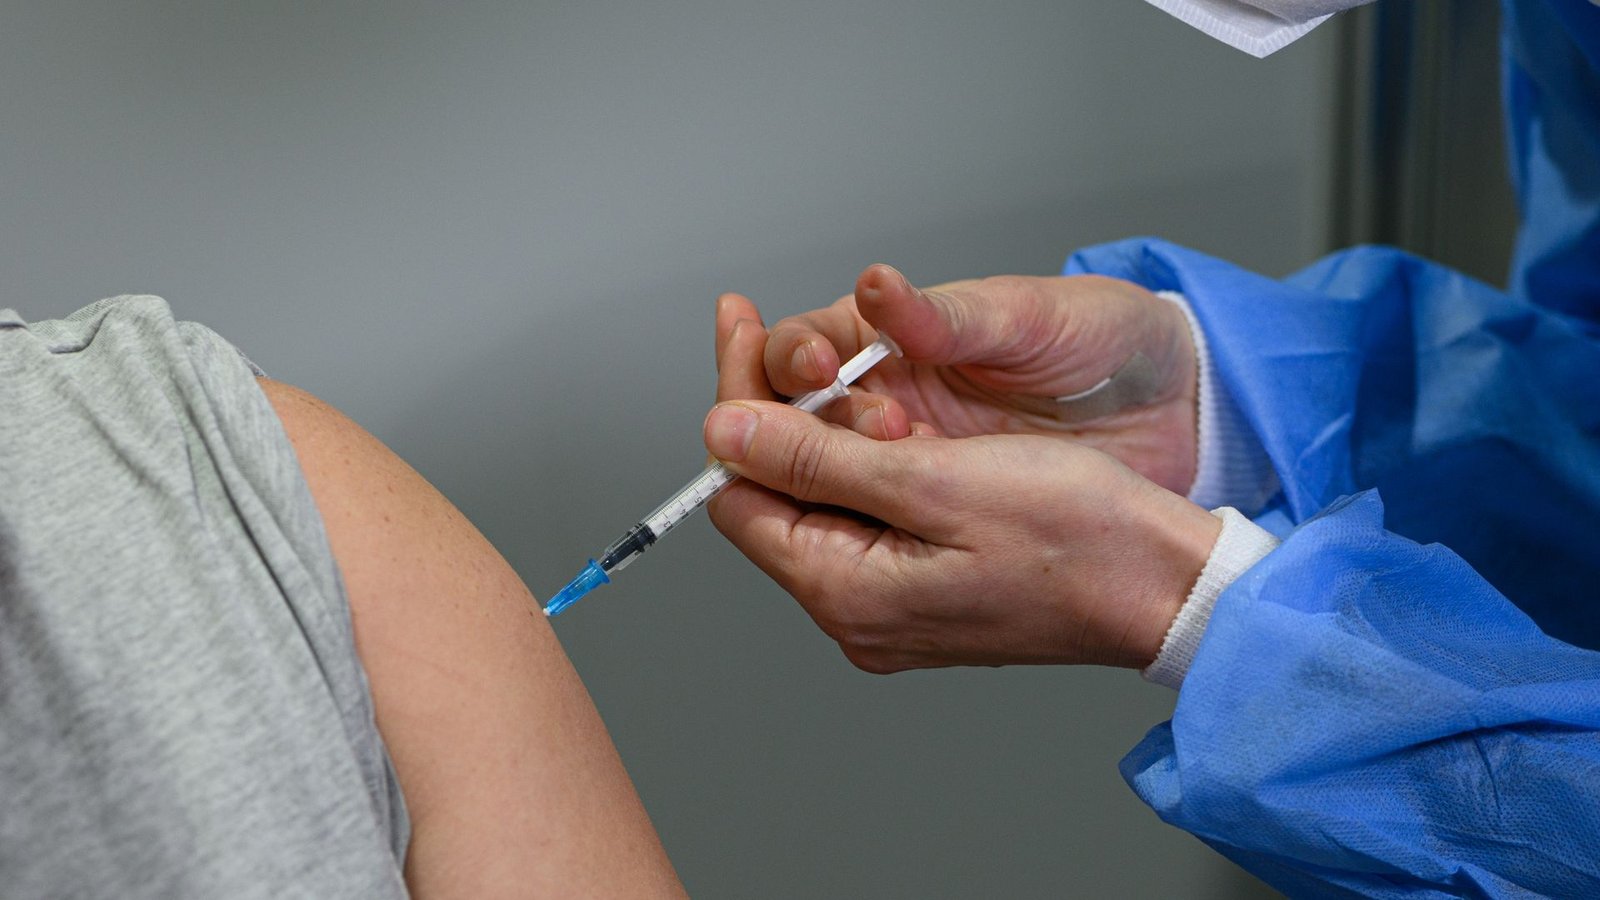 Ein Impfling lässt sich im Impfzentrum mit dem Corona-Impfstoff von Novavax impfen. (zu dpa "Standardimpfungen rückläufig in Sachsen - Plus bei anderen")<span class='image-autor'>Foto: Robert Michael/dpa-Zentralbild/dpa</span>